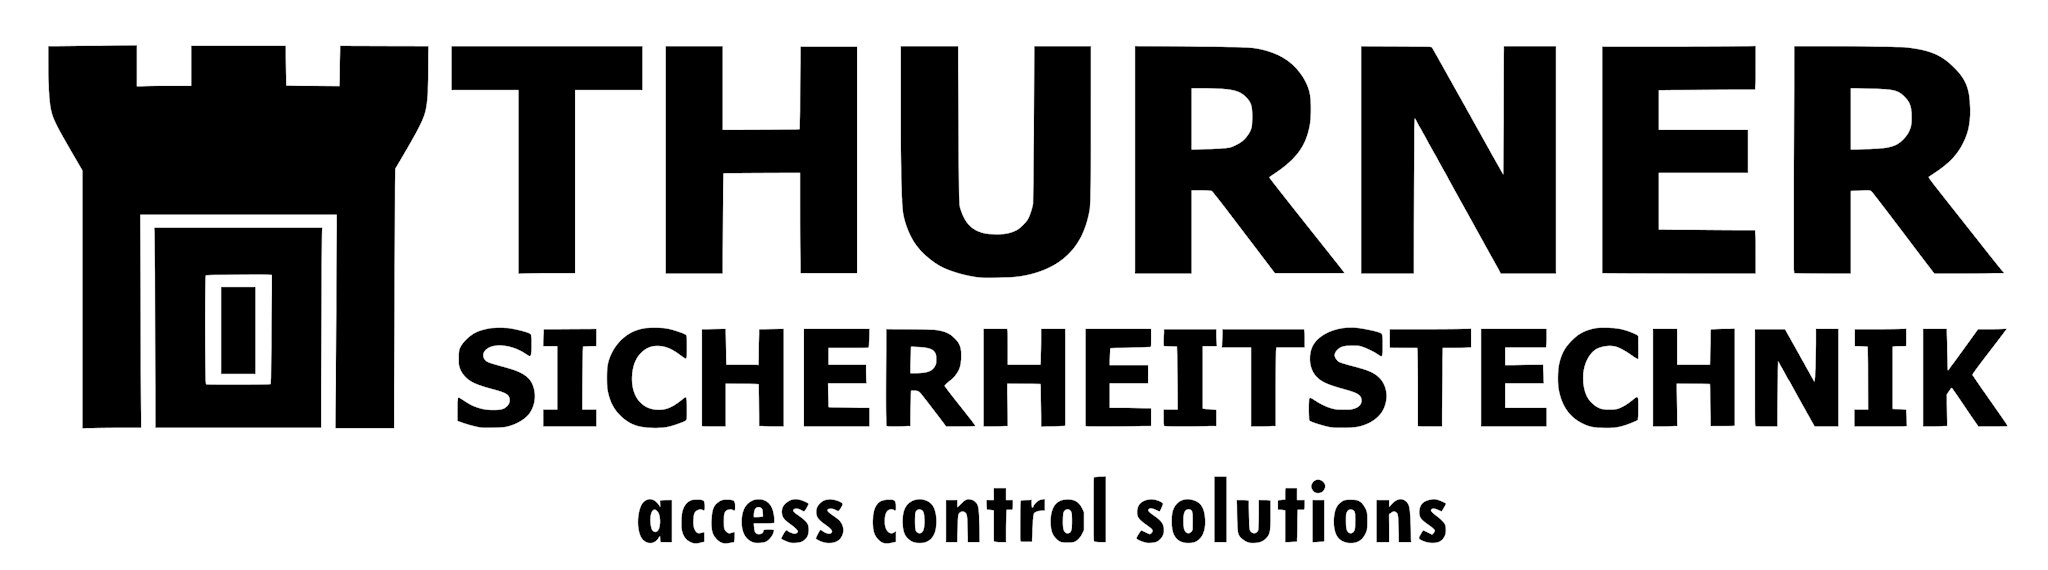 thurner sicherheitstechnik middle logo